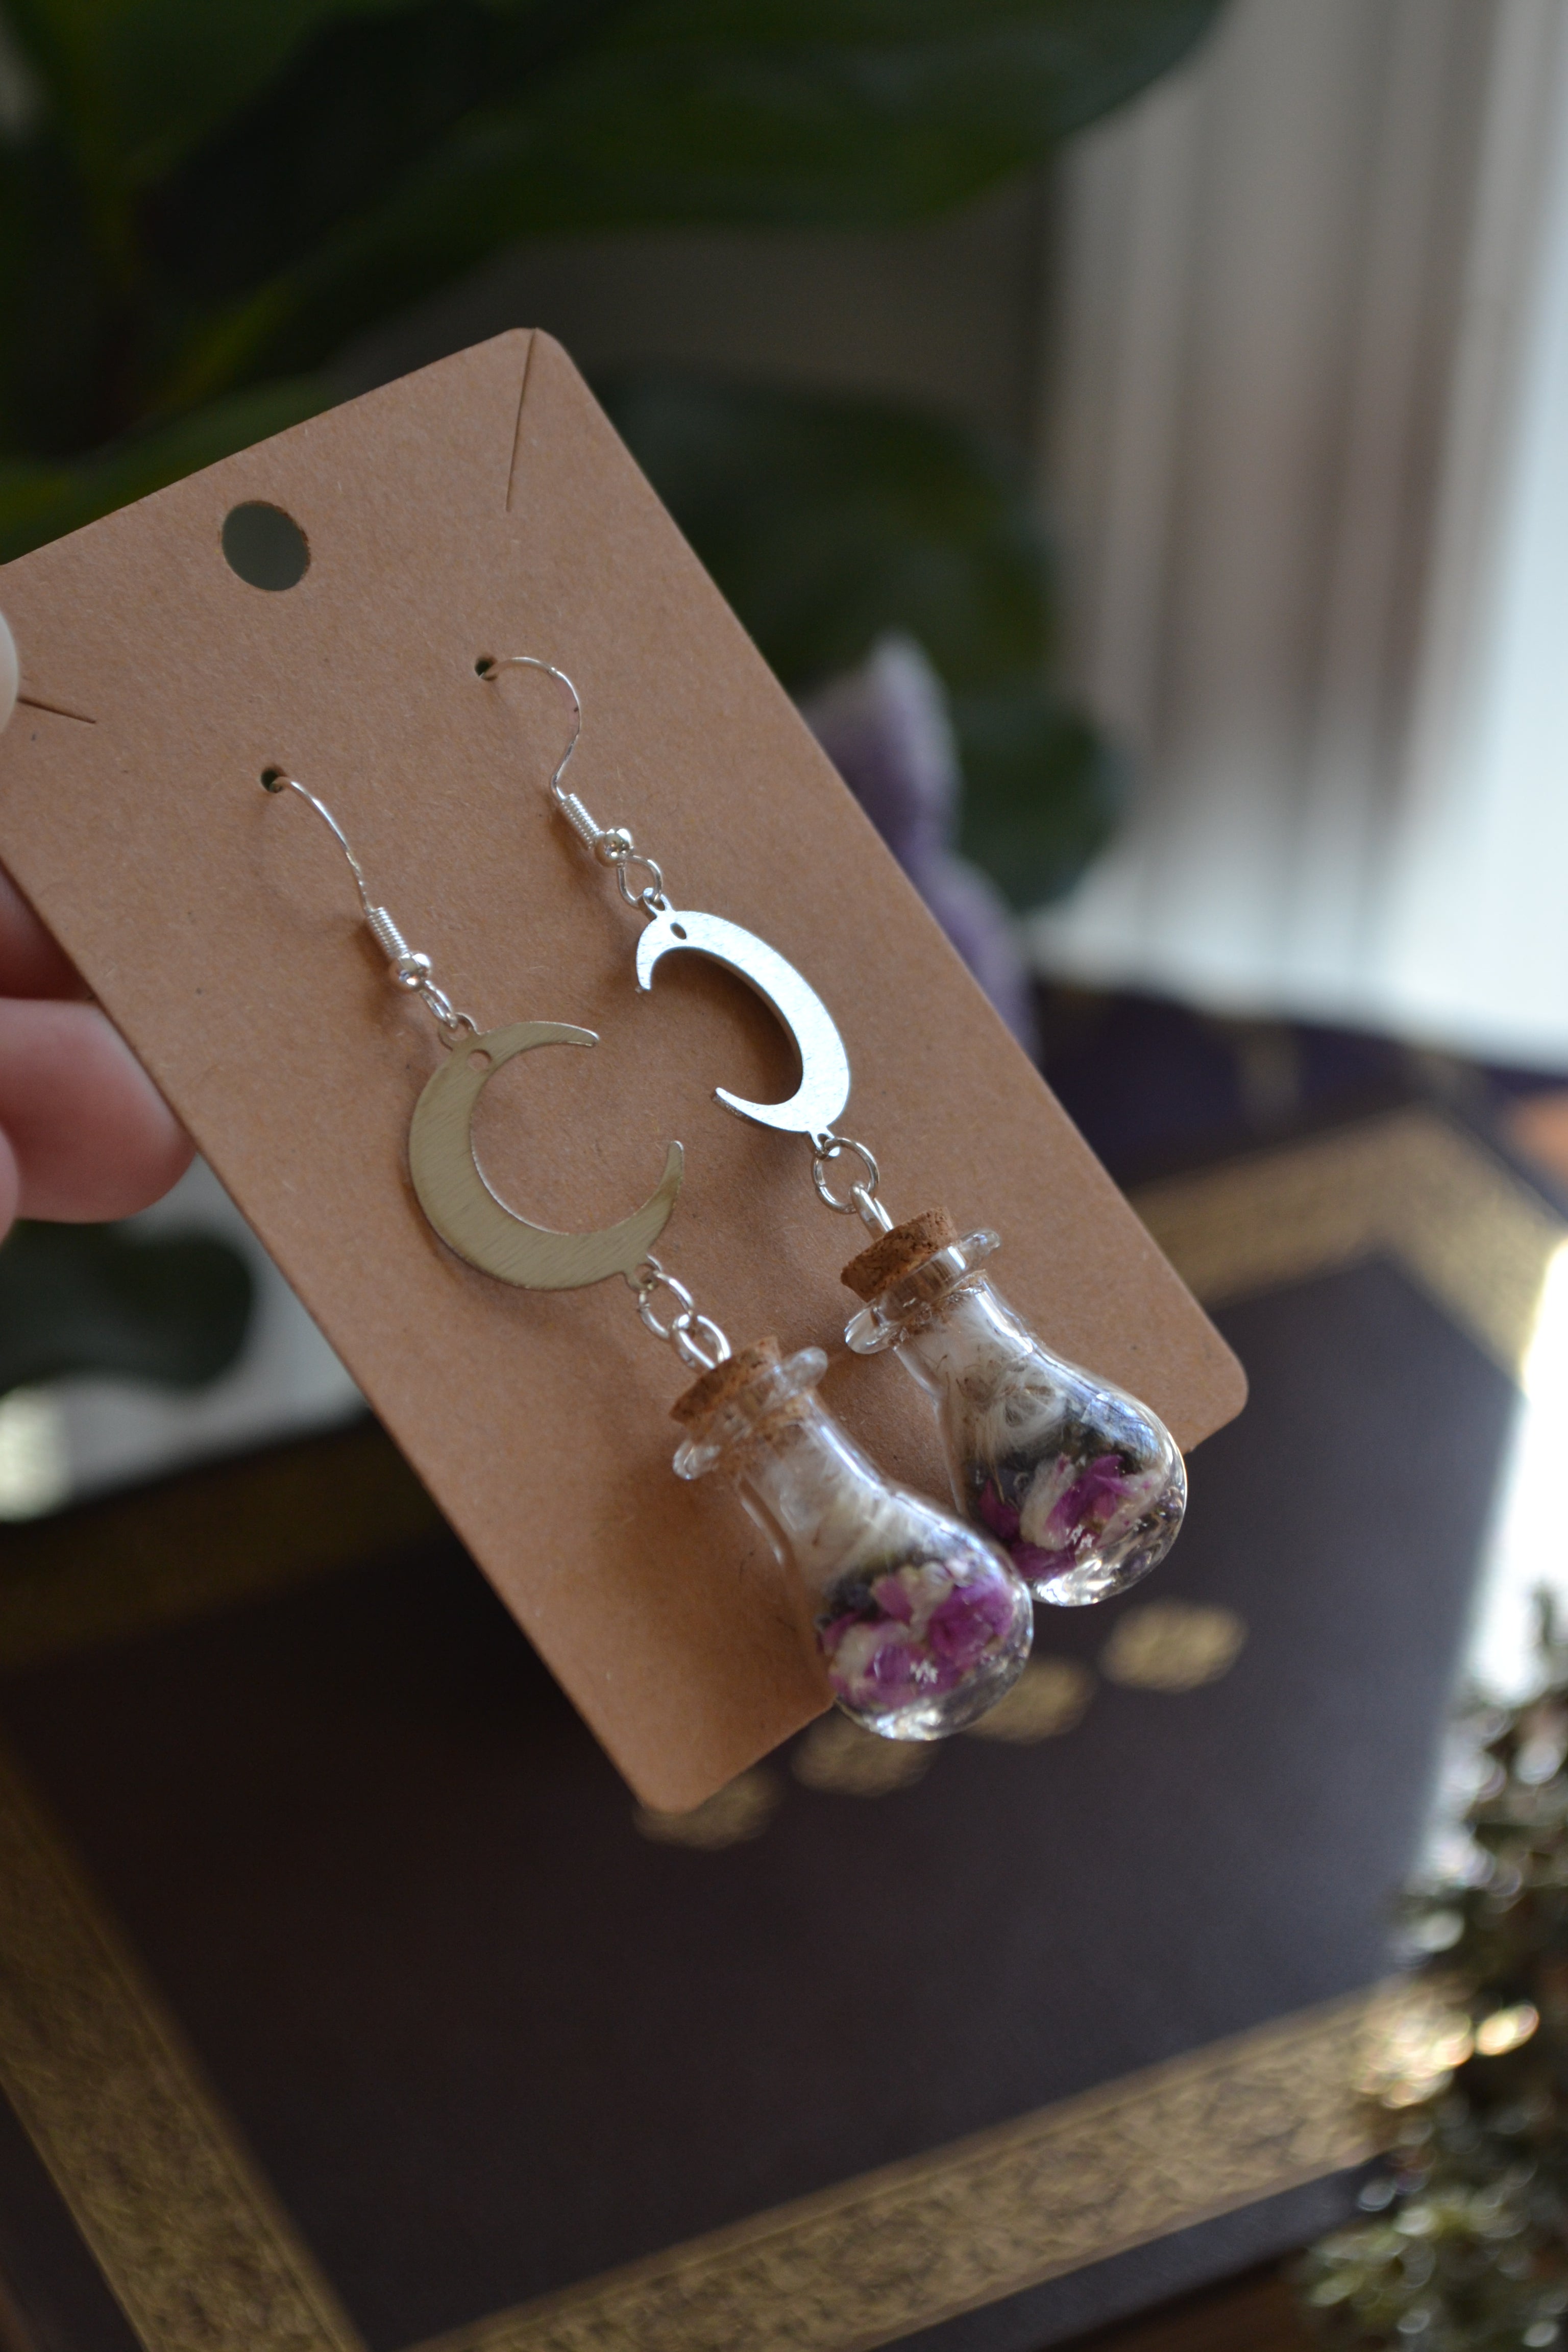 Dandelion, Globe Amaranth, and Lavender Spell Bottle Earrings